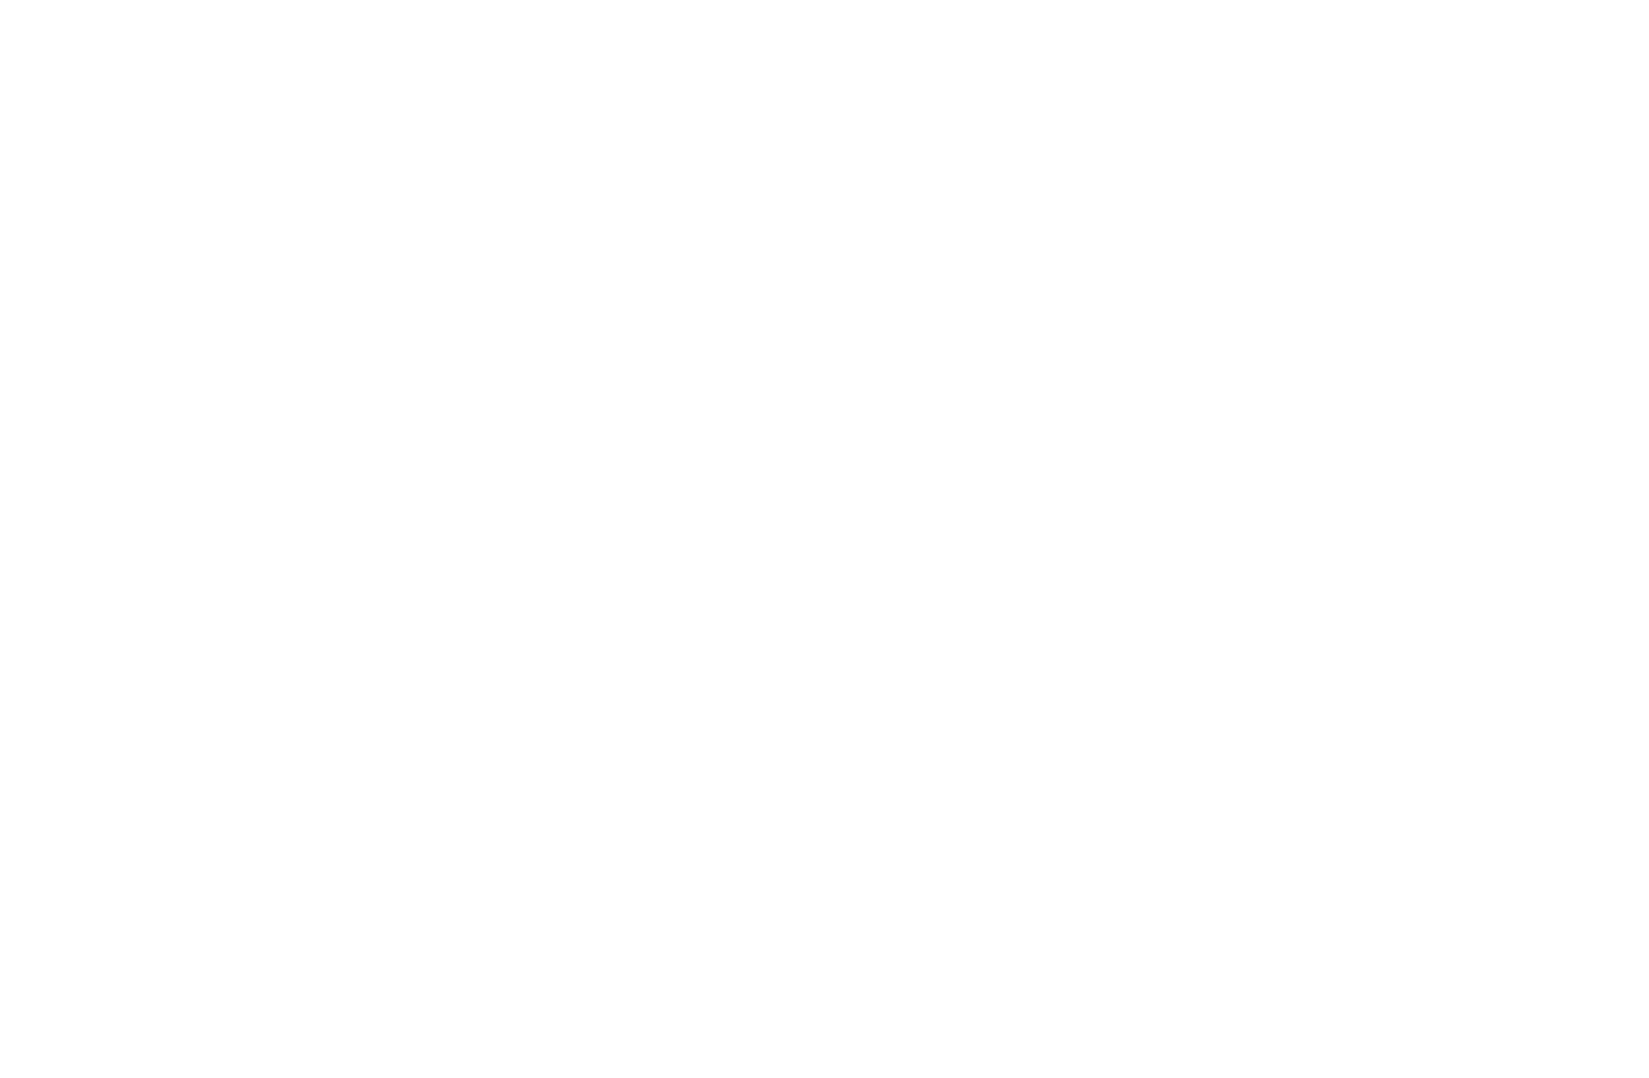 Stein- und Bildhauerei Kartz 